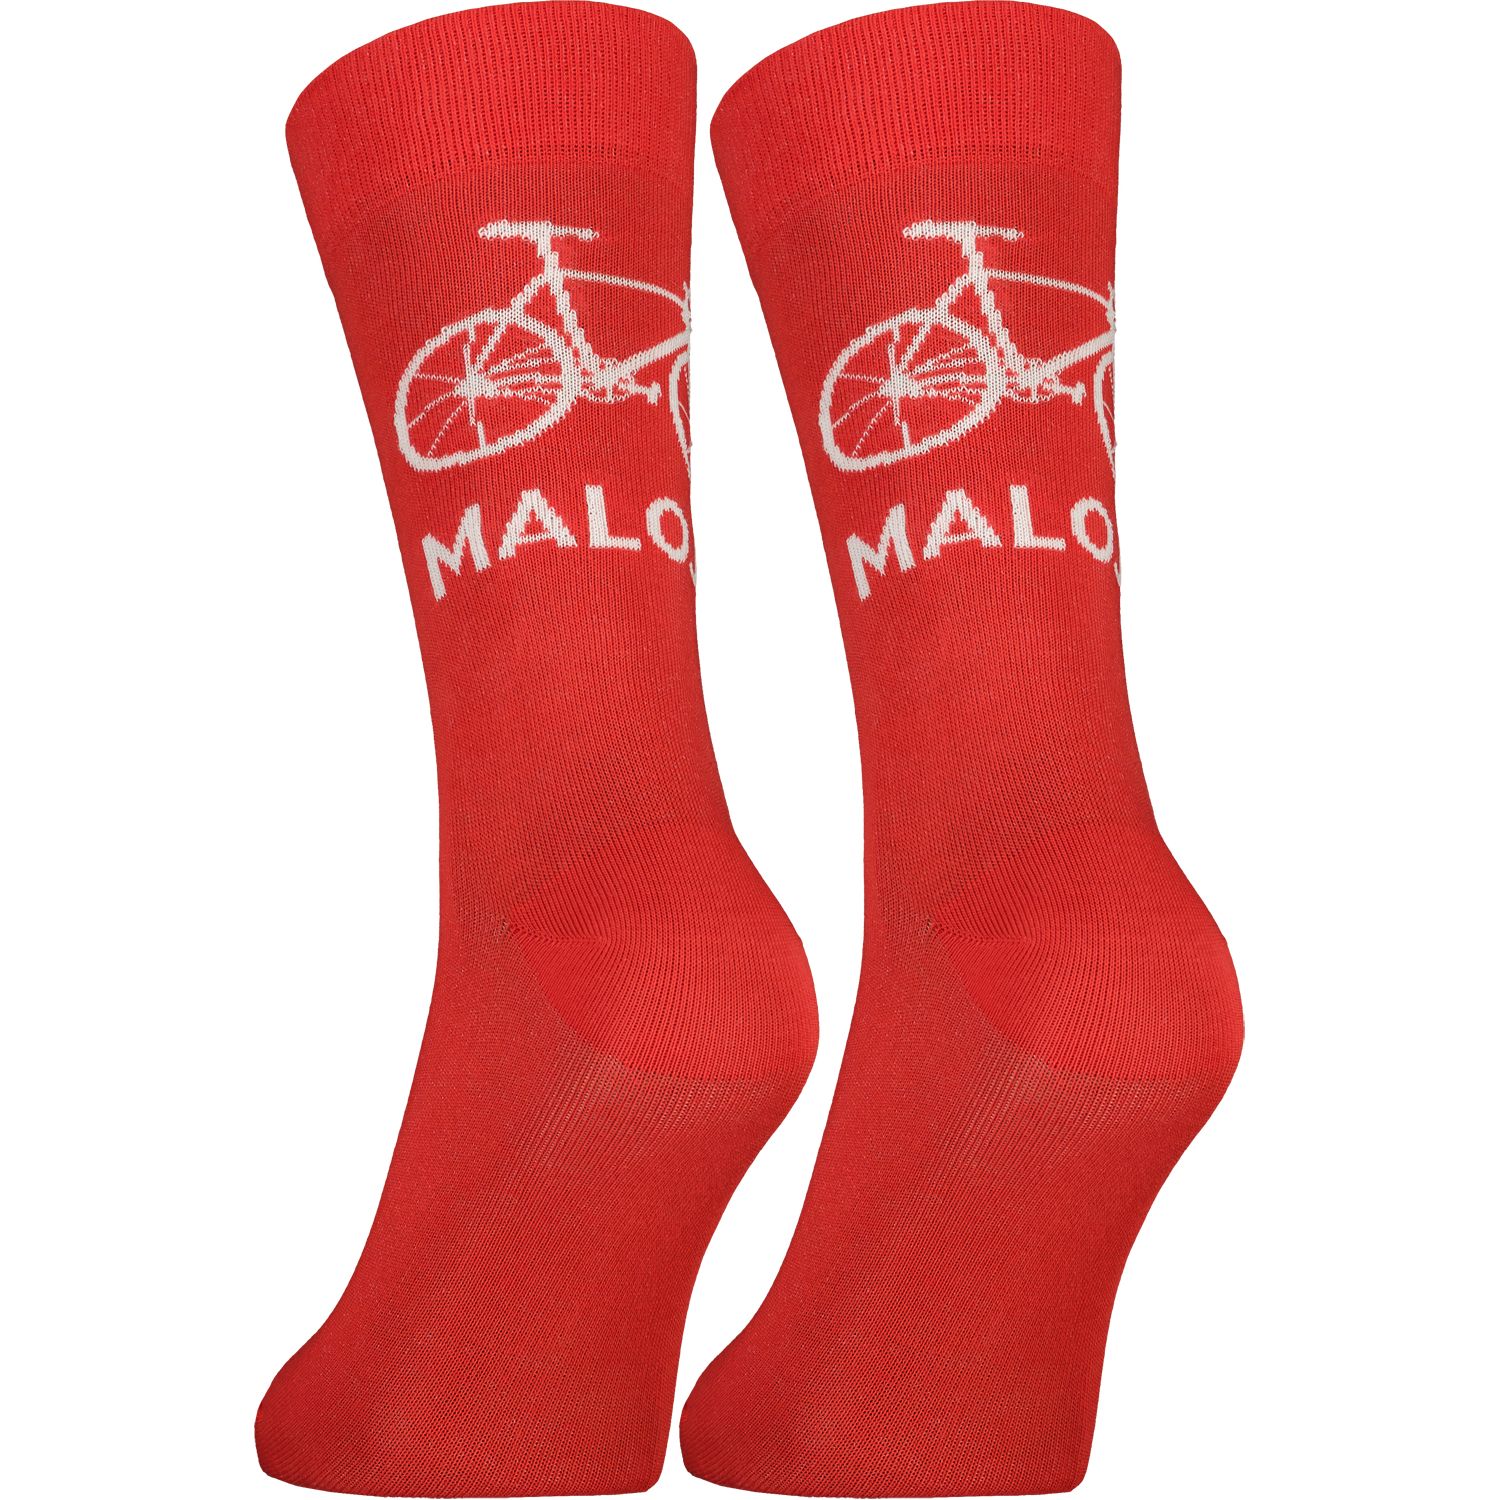 Produktbild von Maloja StalkM. Socken - fire red 8776